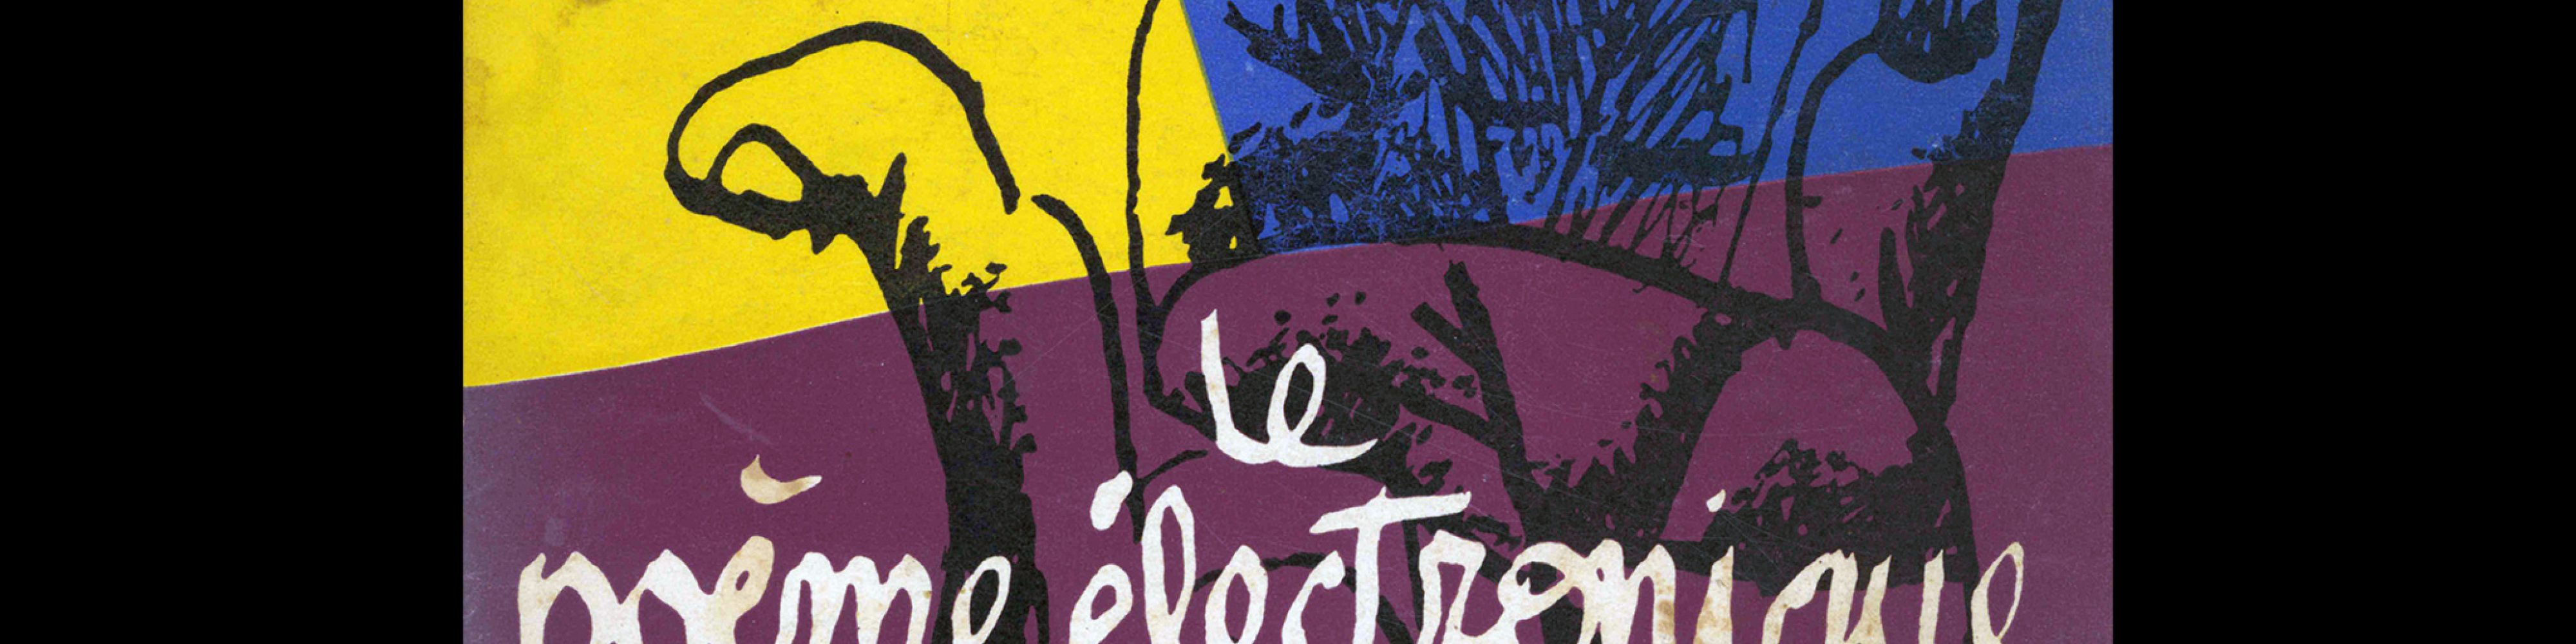 Le poème électronique Le Corbusier, 1958. Cover designed by Jean Petit